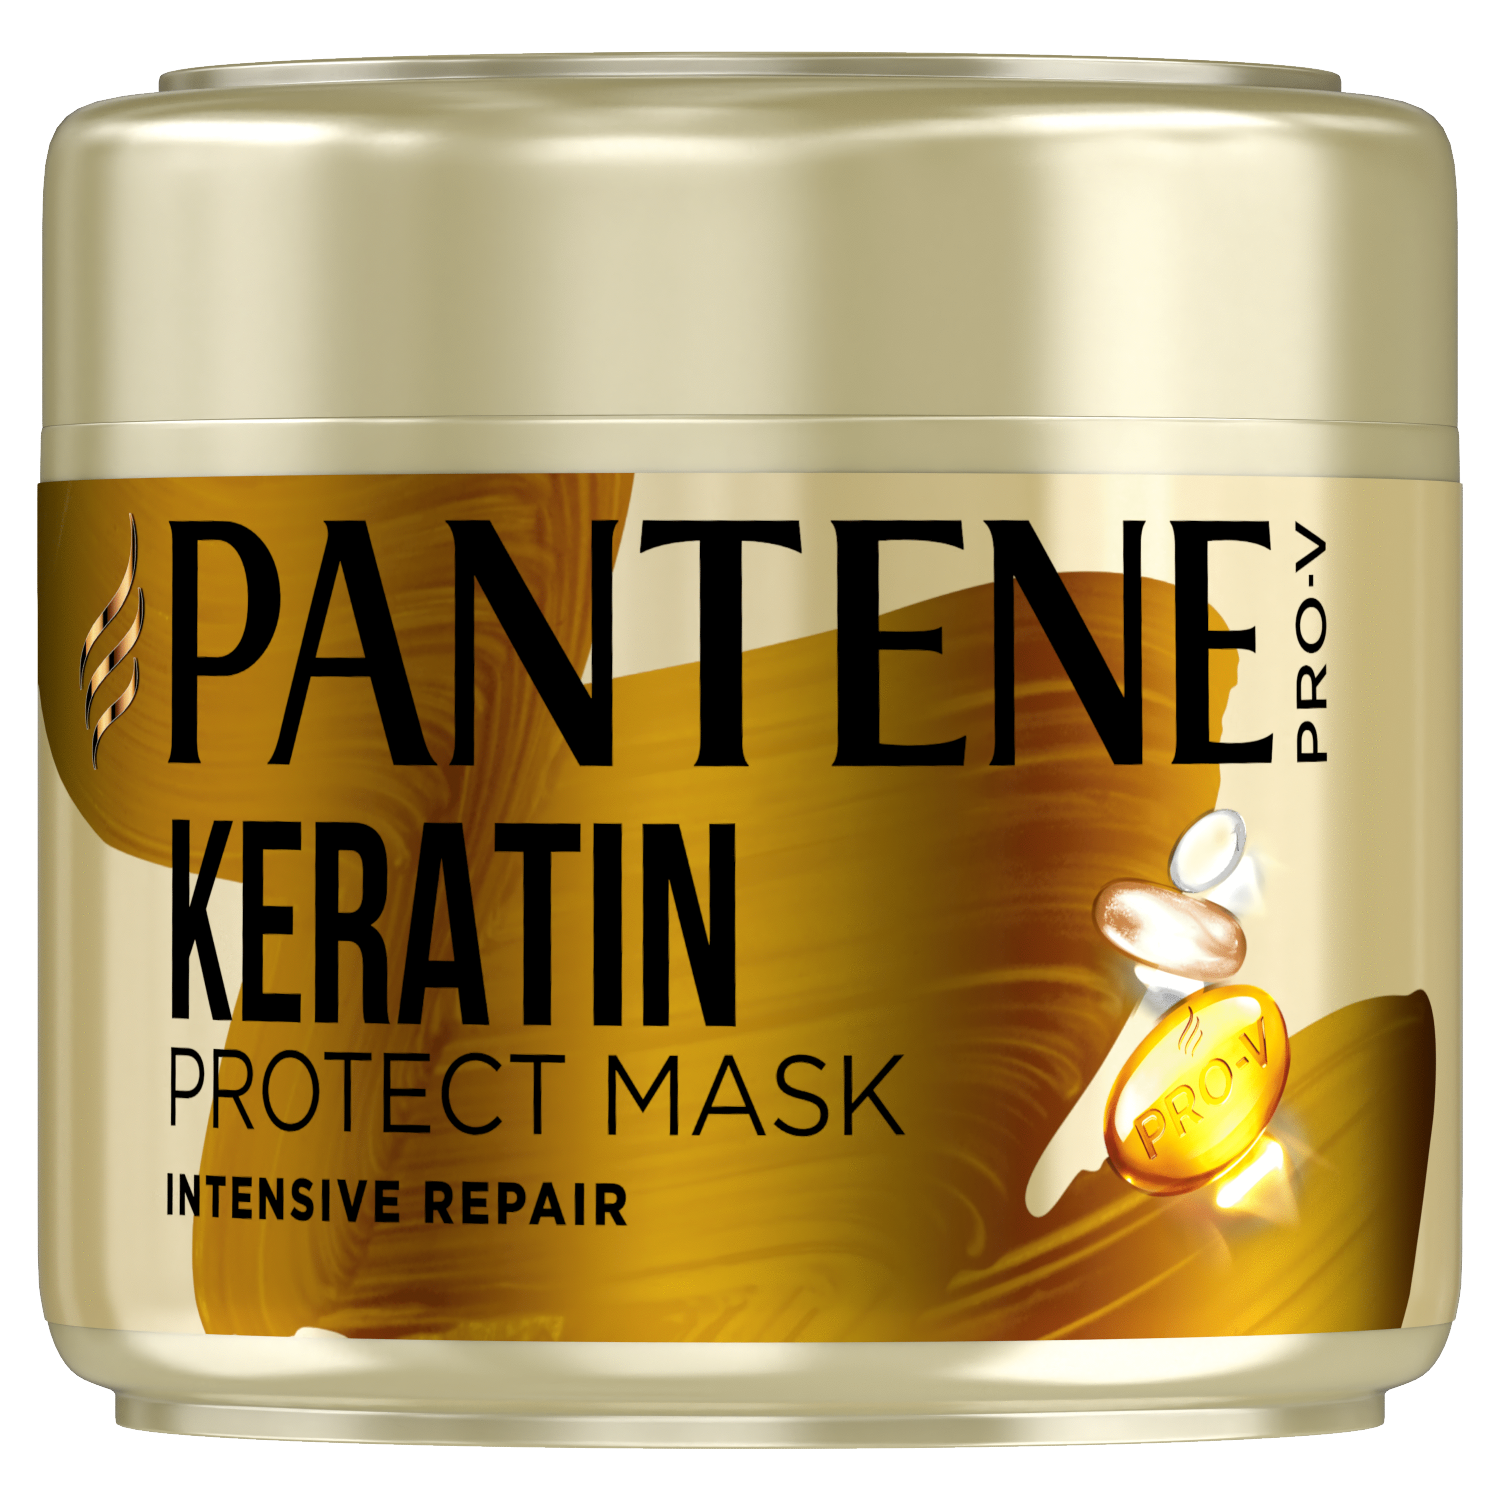 Pantene maska do włosów regenerująca 300ml Intensive Repair | hebe.pl